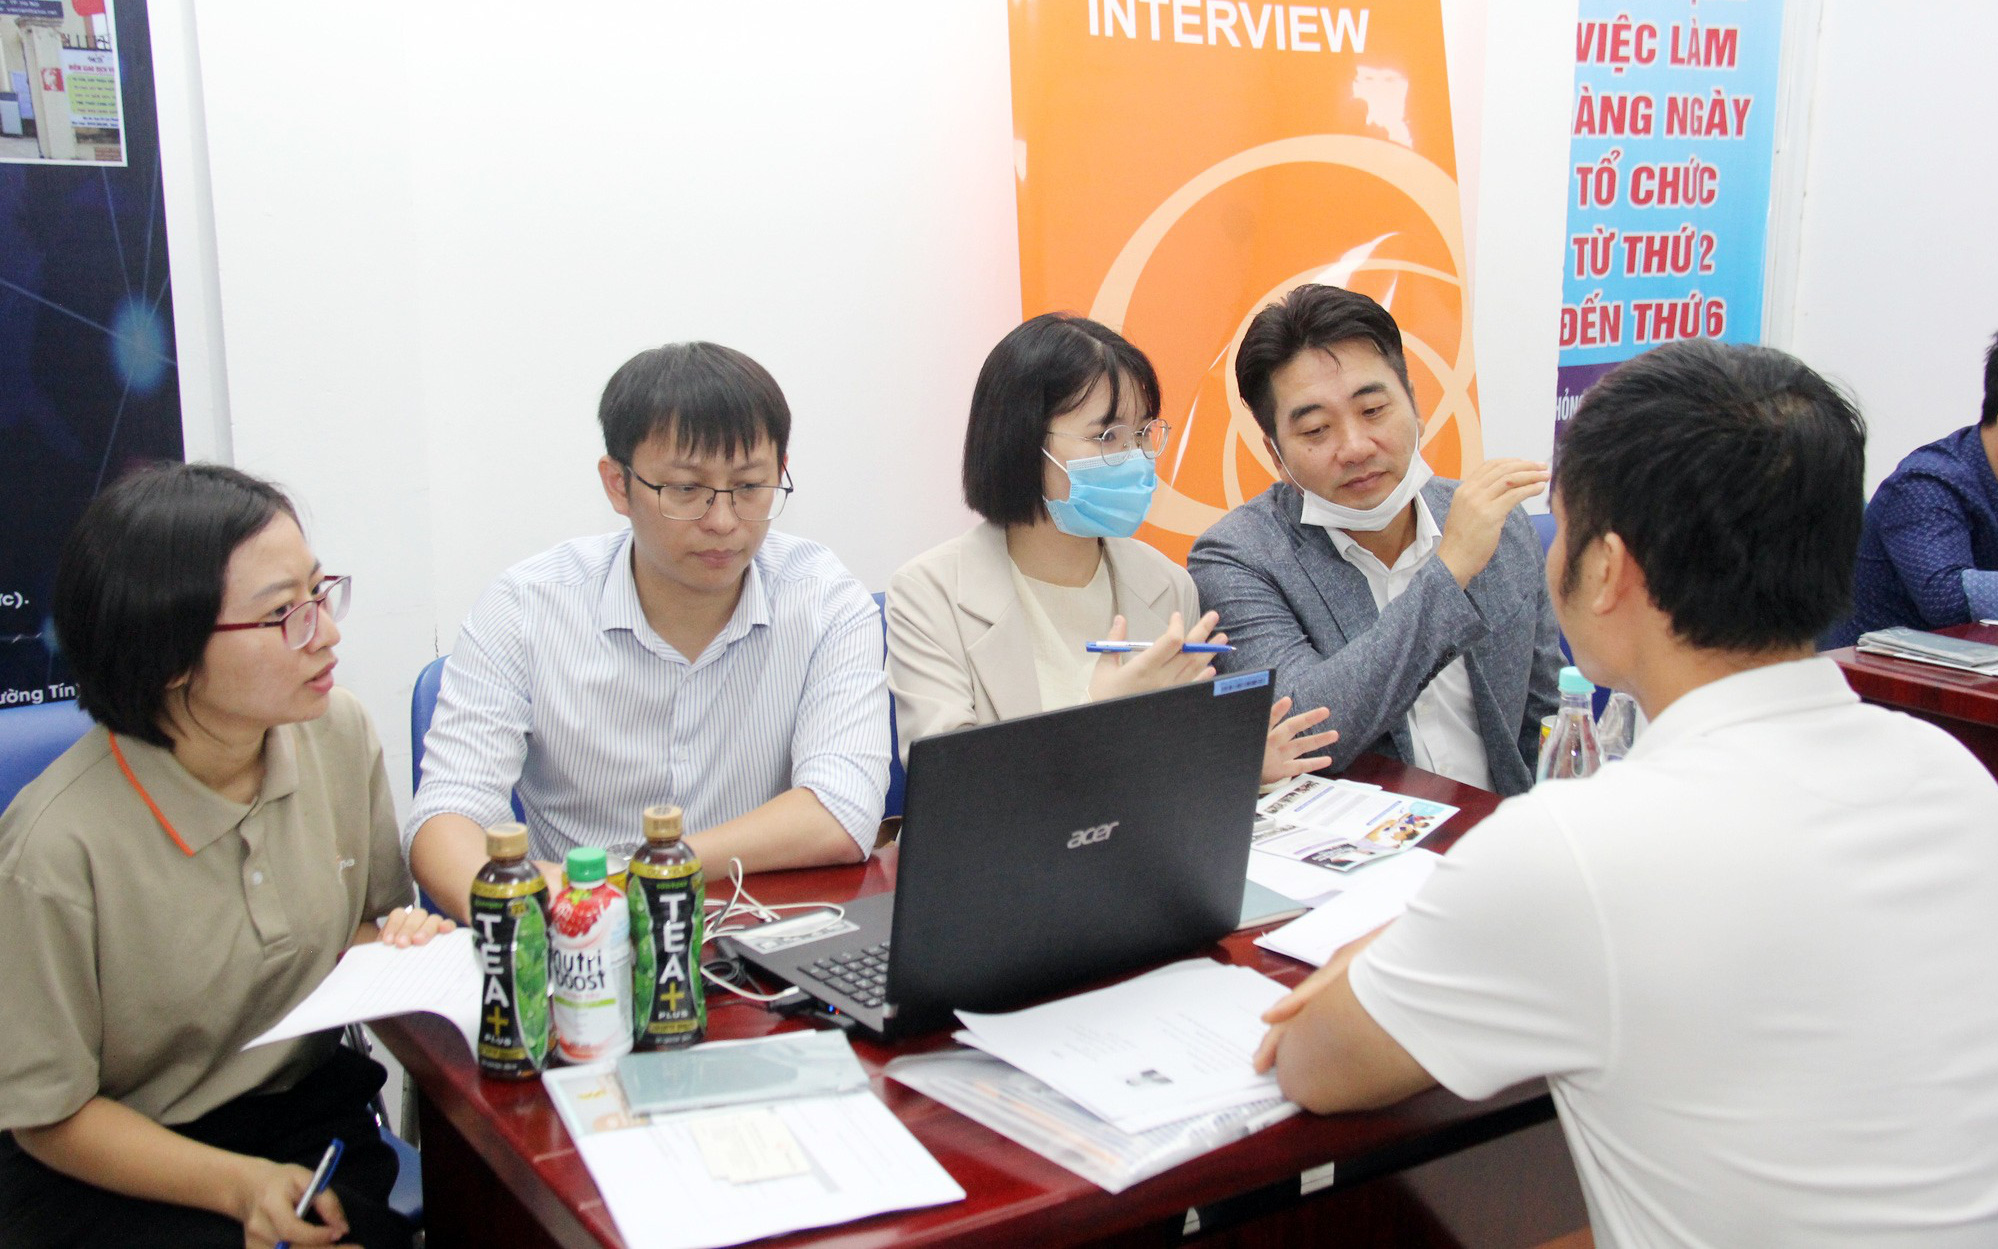 Tham gia phiên giao dịch việc làm, HSSV Hà Nội sẽ có việc làm khi đáp ứng đủ yêu cầu